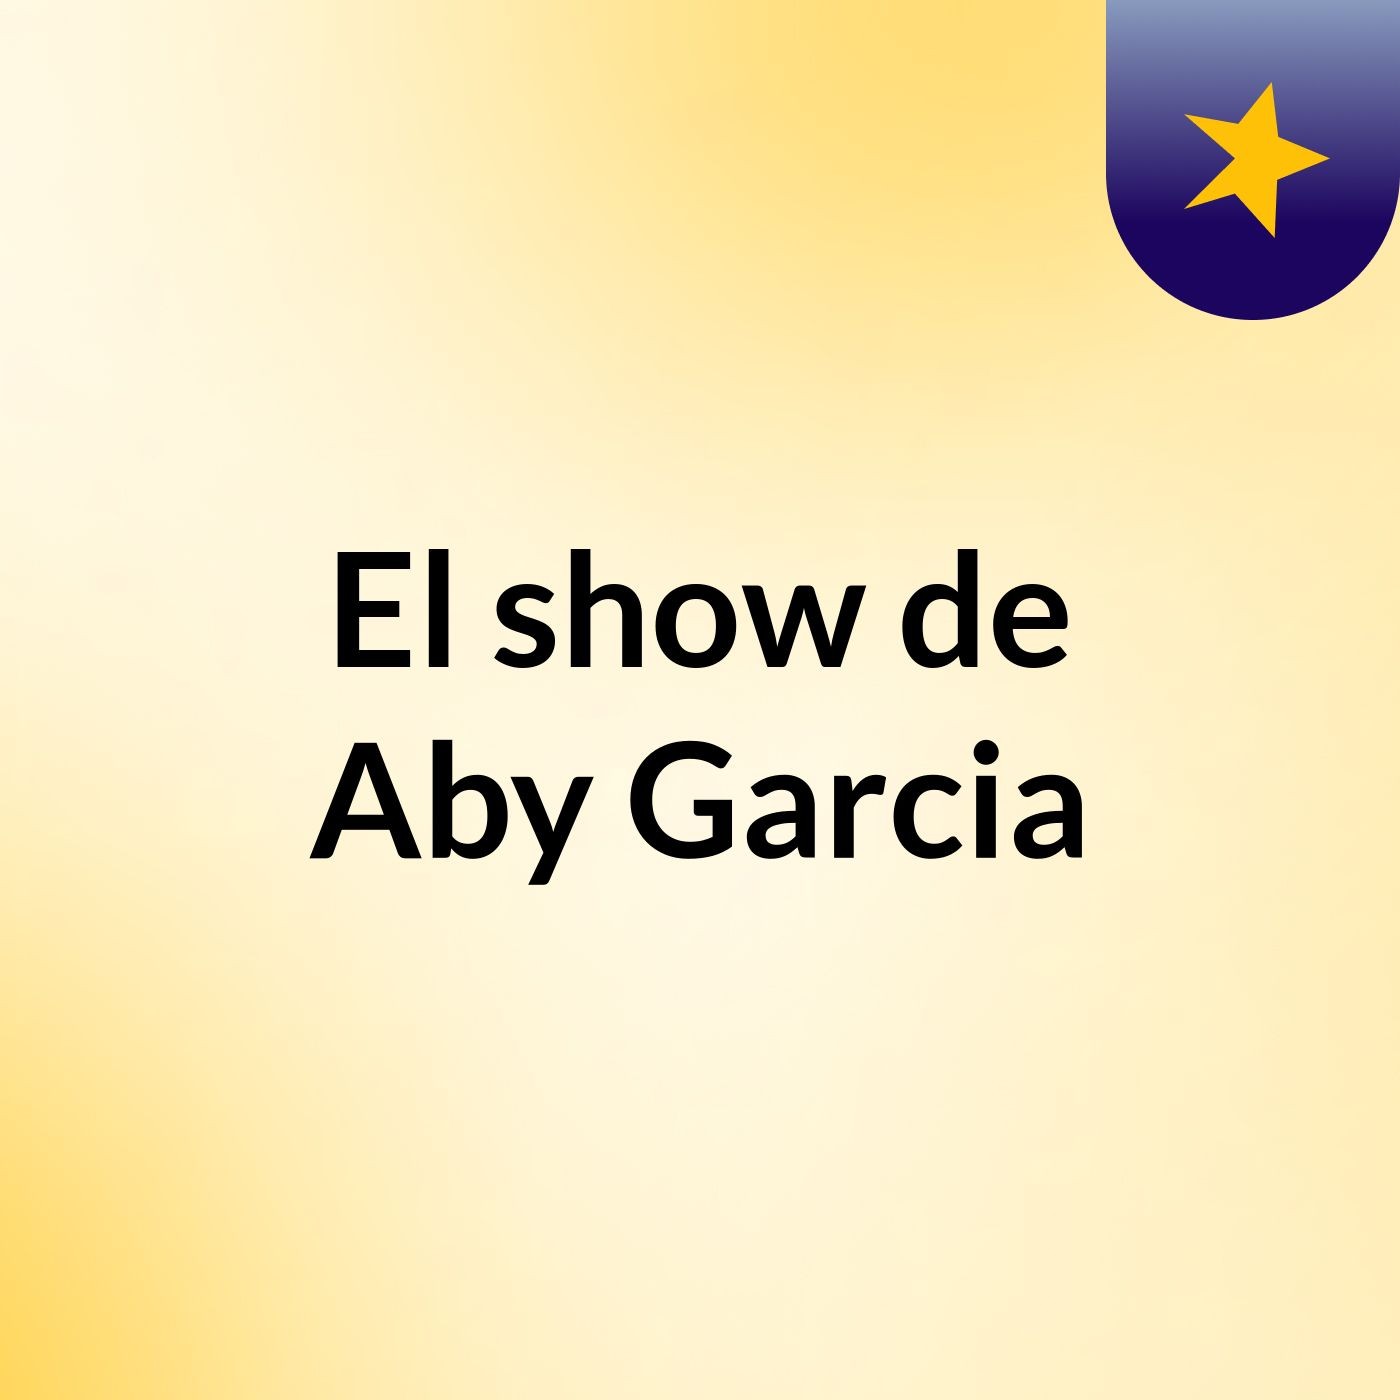 El show de Aby Garcia